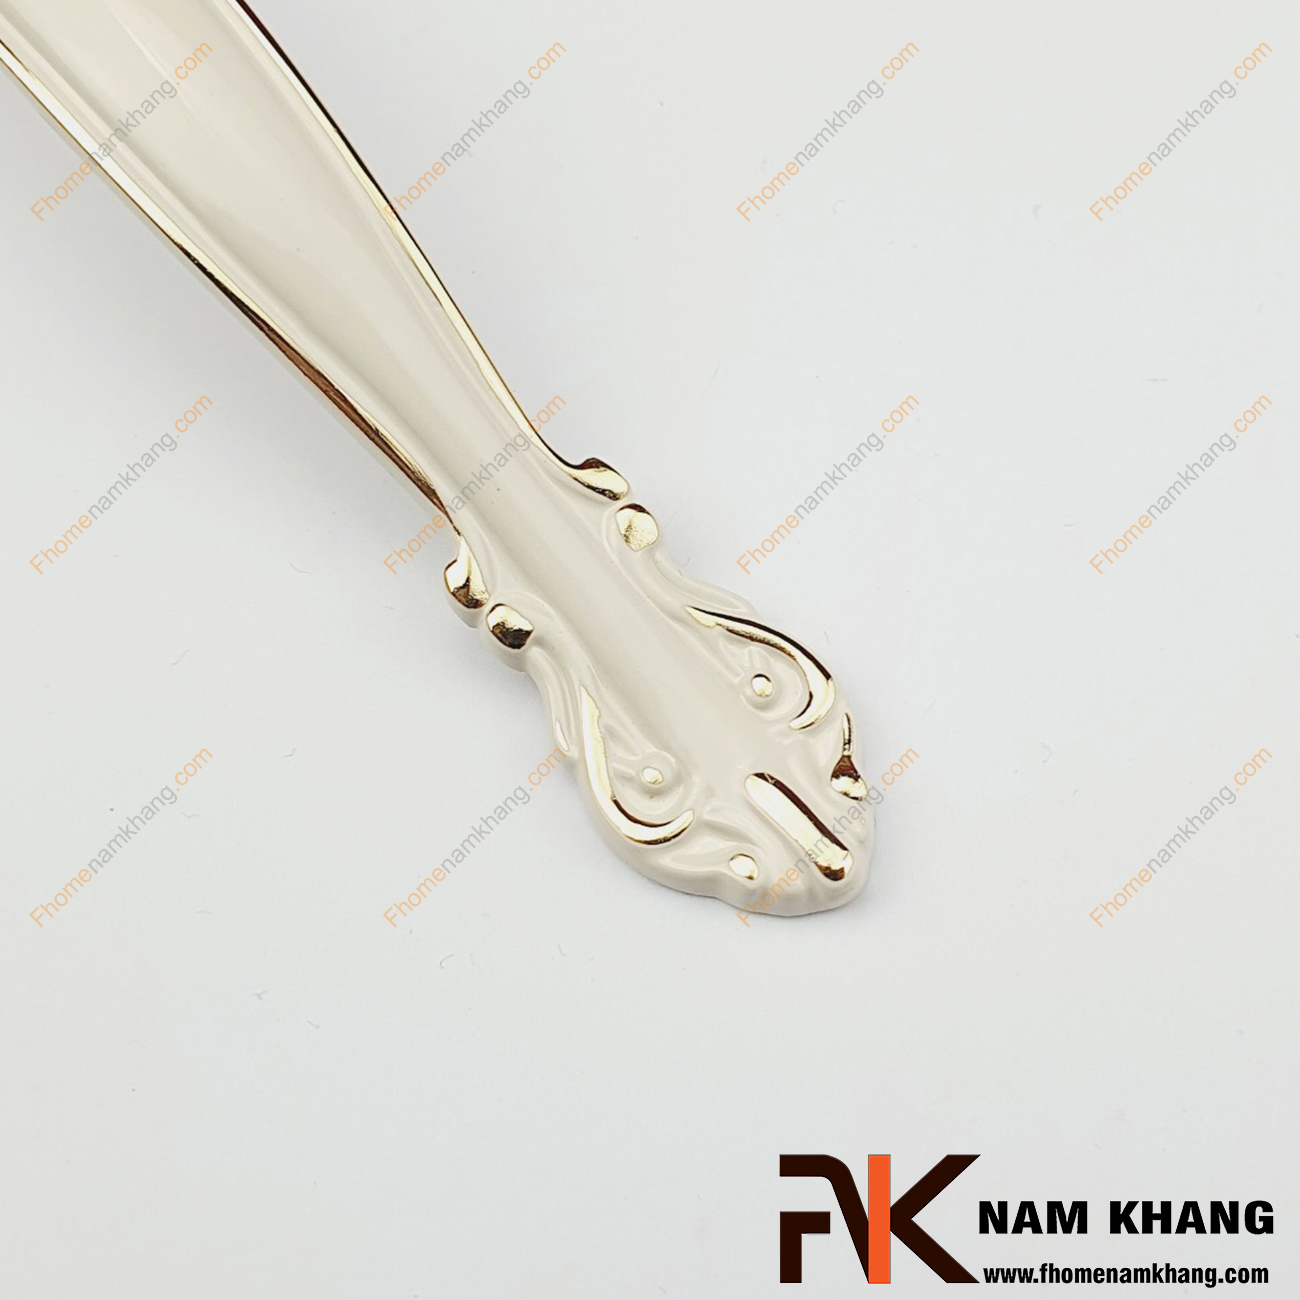 Tay nắm tủ cổ điển trắng viền vàng NK049-TV lấy cảm hứng thiết kế với họa tiết chủ đạo là dạng viên ngọc elip ở giữa thân tay nắm. Sản phẩm được sản xuất từ vât liệu hợp kim cao cấp mạ màu  cổ điển rất sang trọng.